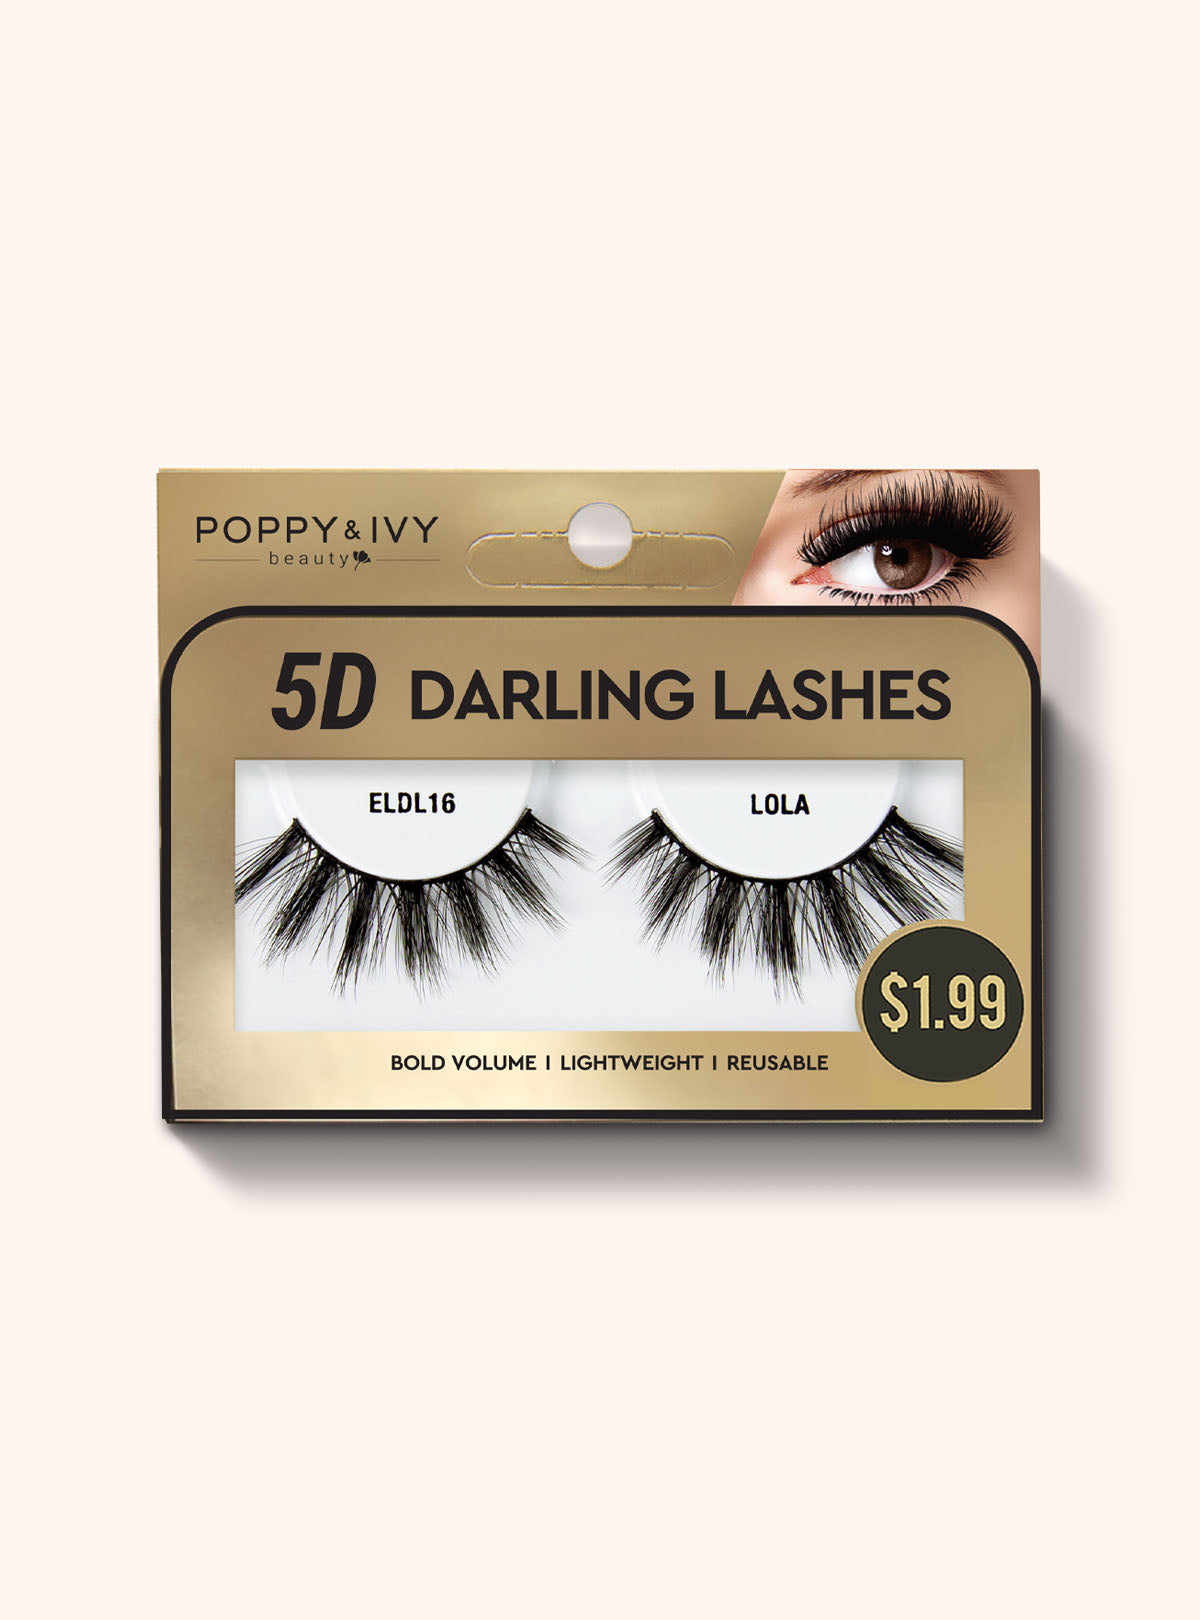 Poppy & Ivy 5D Darling Lashes || Lola